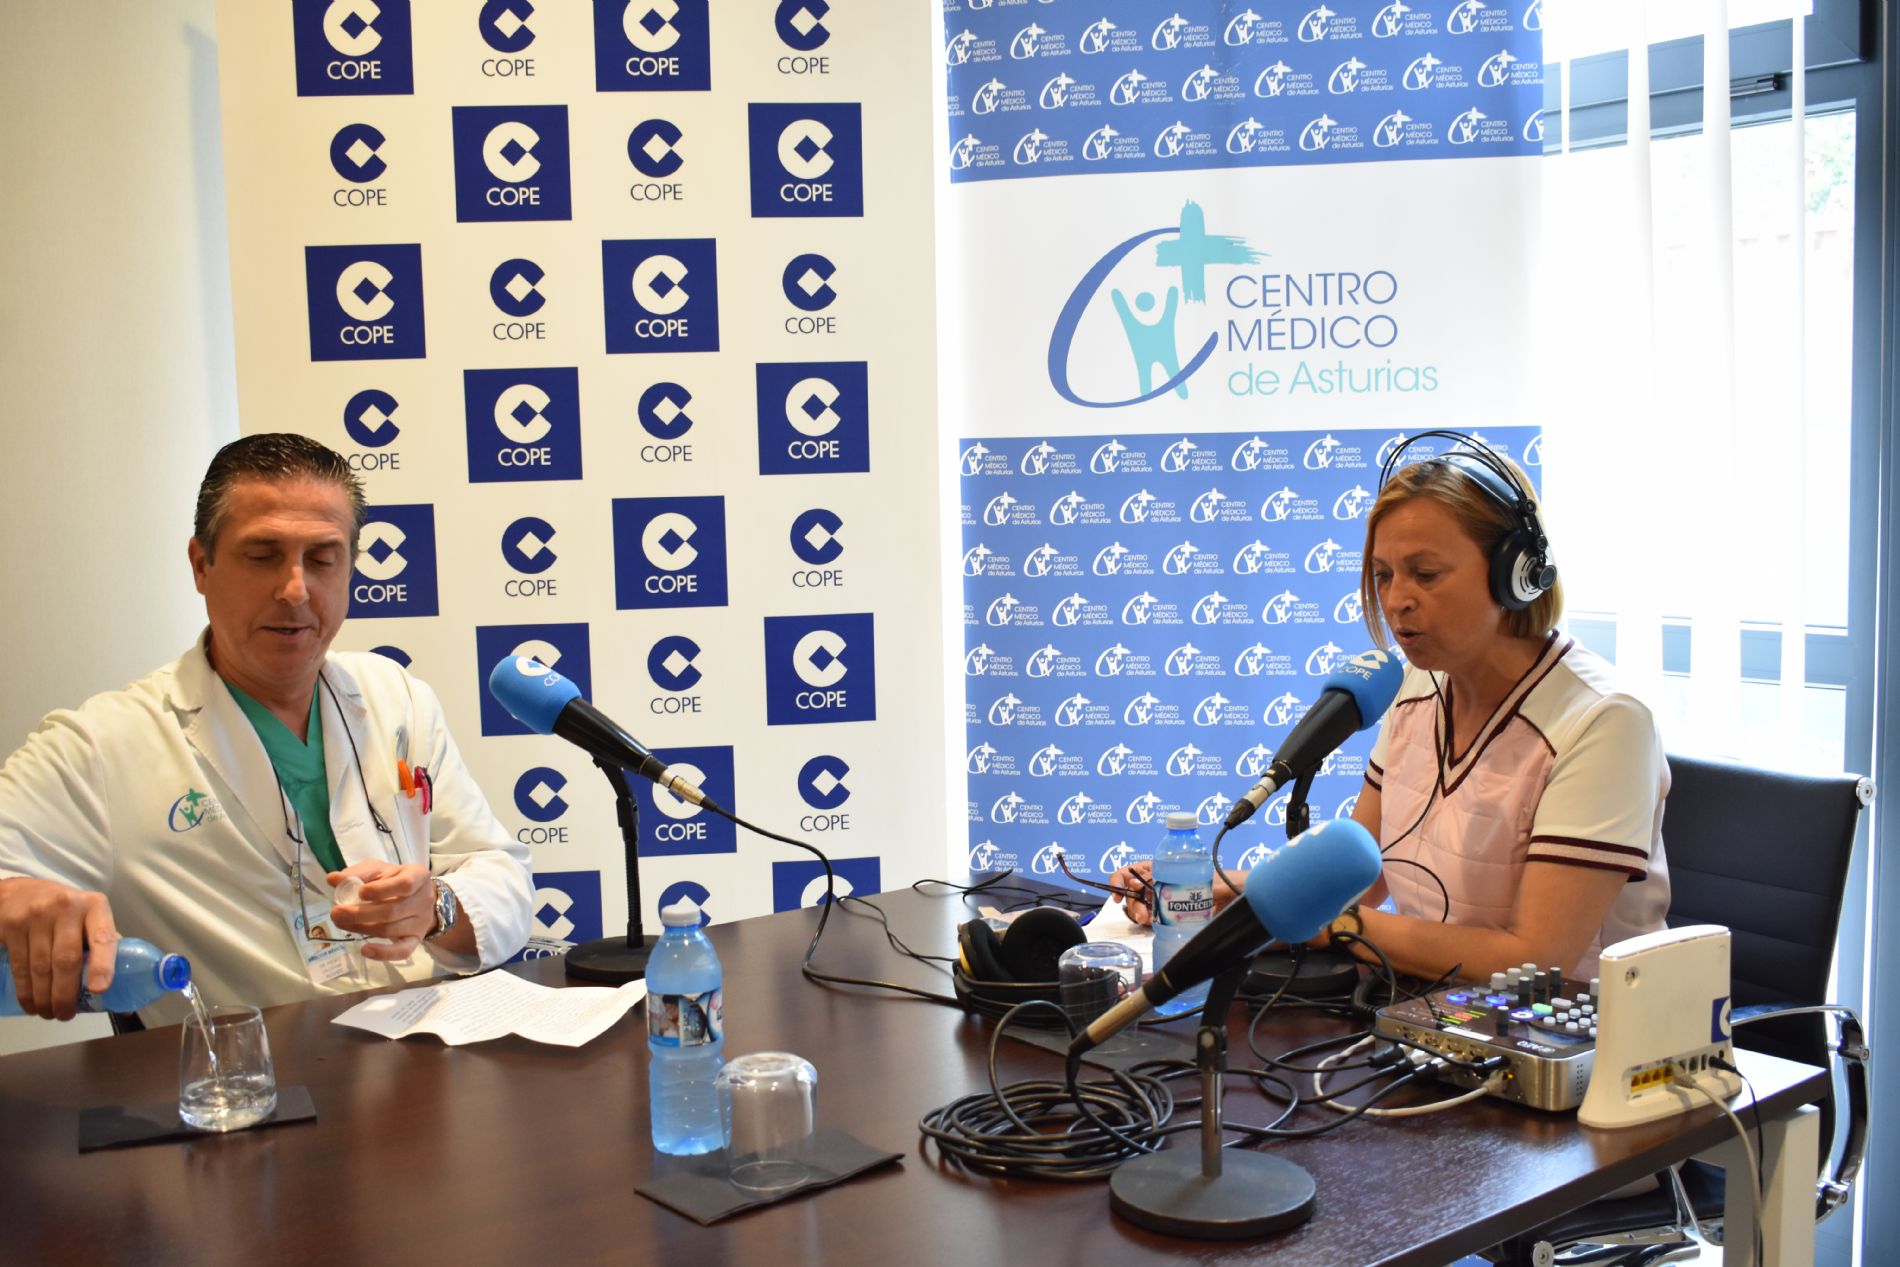 Programa de radio COPE Asturias en directo desde el CMA